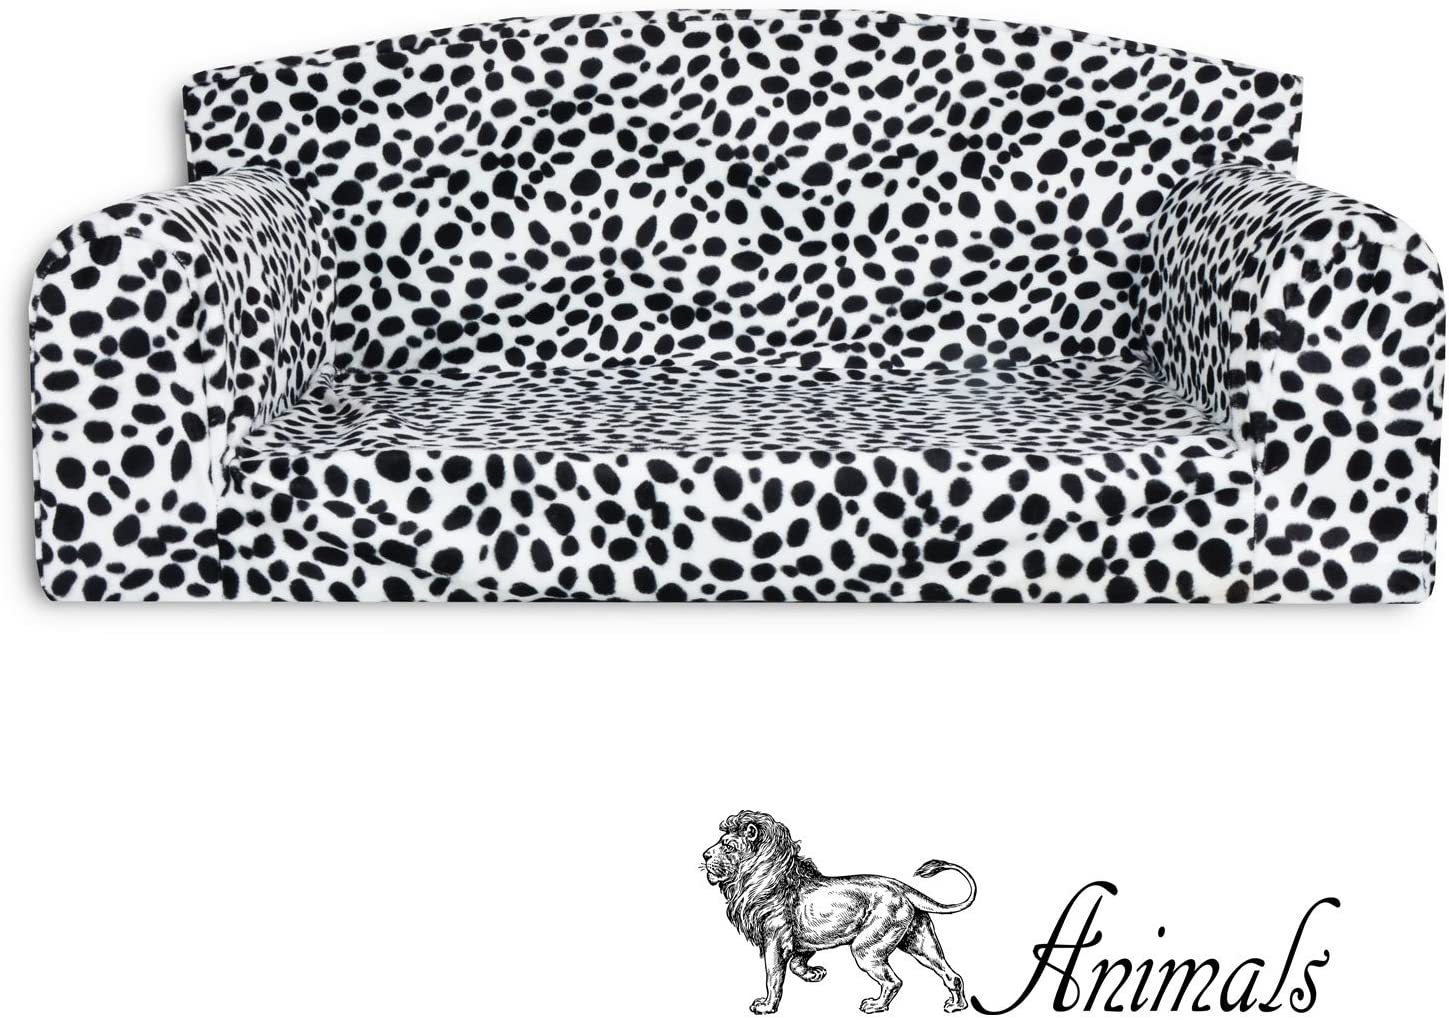  Animal - Sofá para mascota, diseño de dálmata,cama de 3 tamaños para perro,funda de material de alta calidad,fabricado en el Reino Unido 